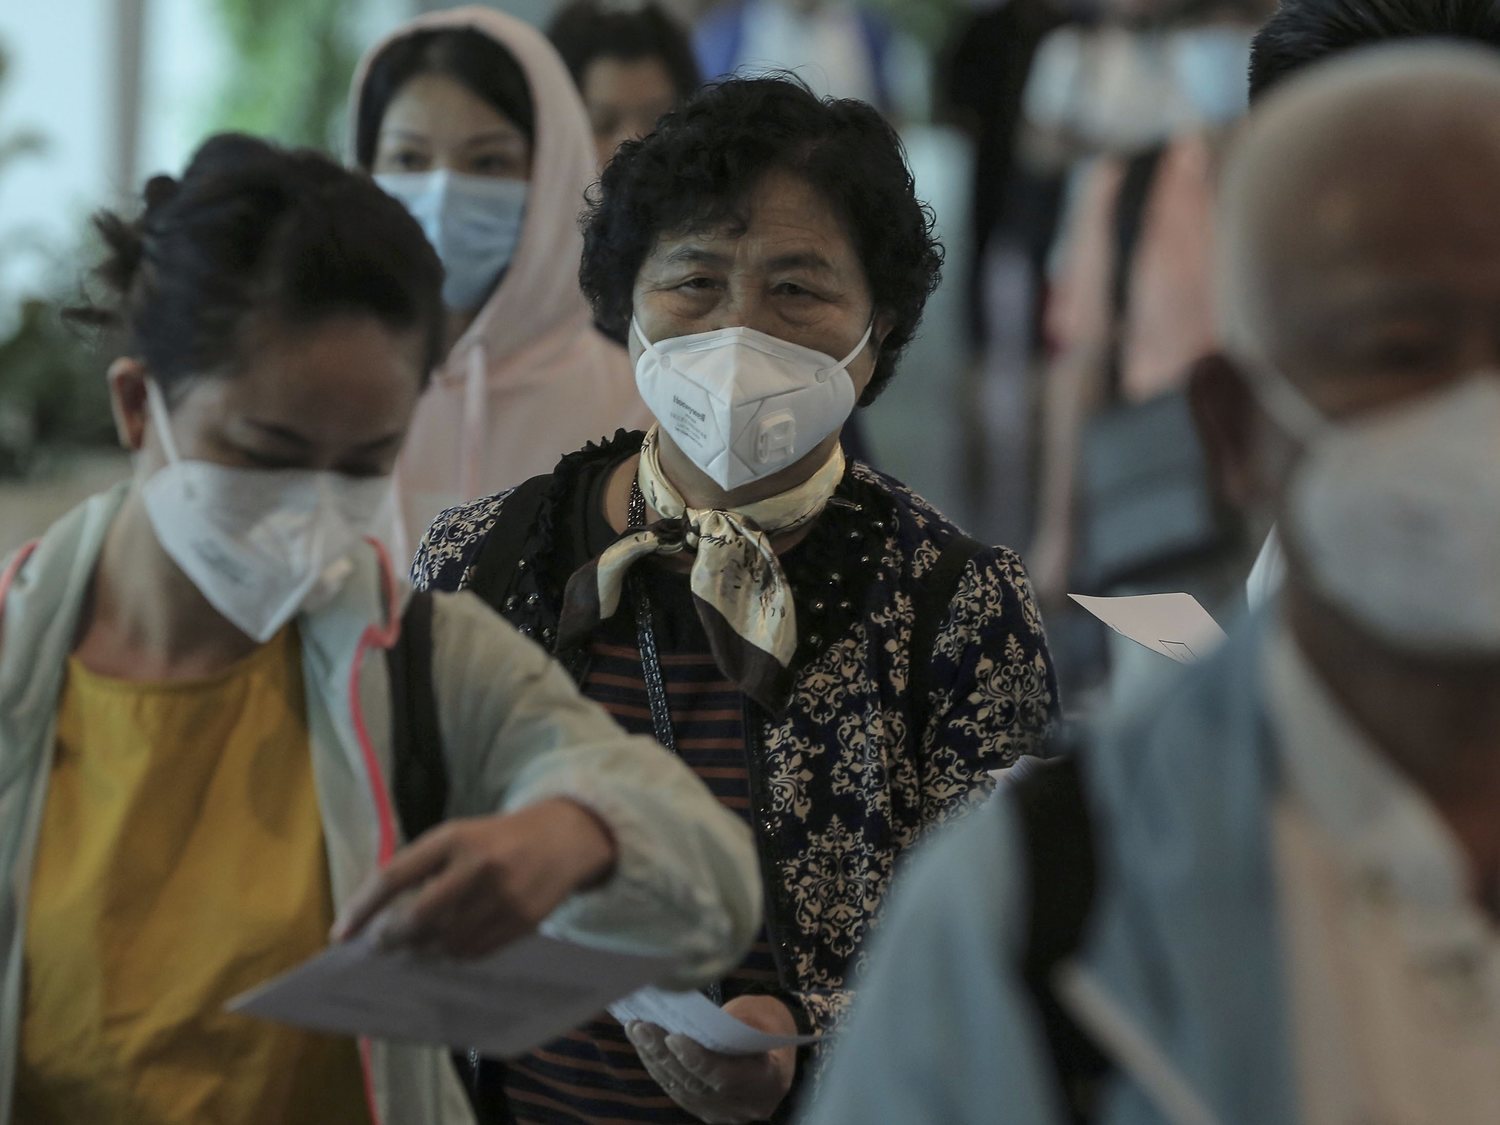 Los datos "engañosos" de China hacen temer una catástrofe peor en Europa por coronavirus